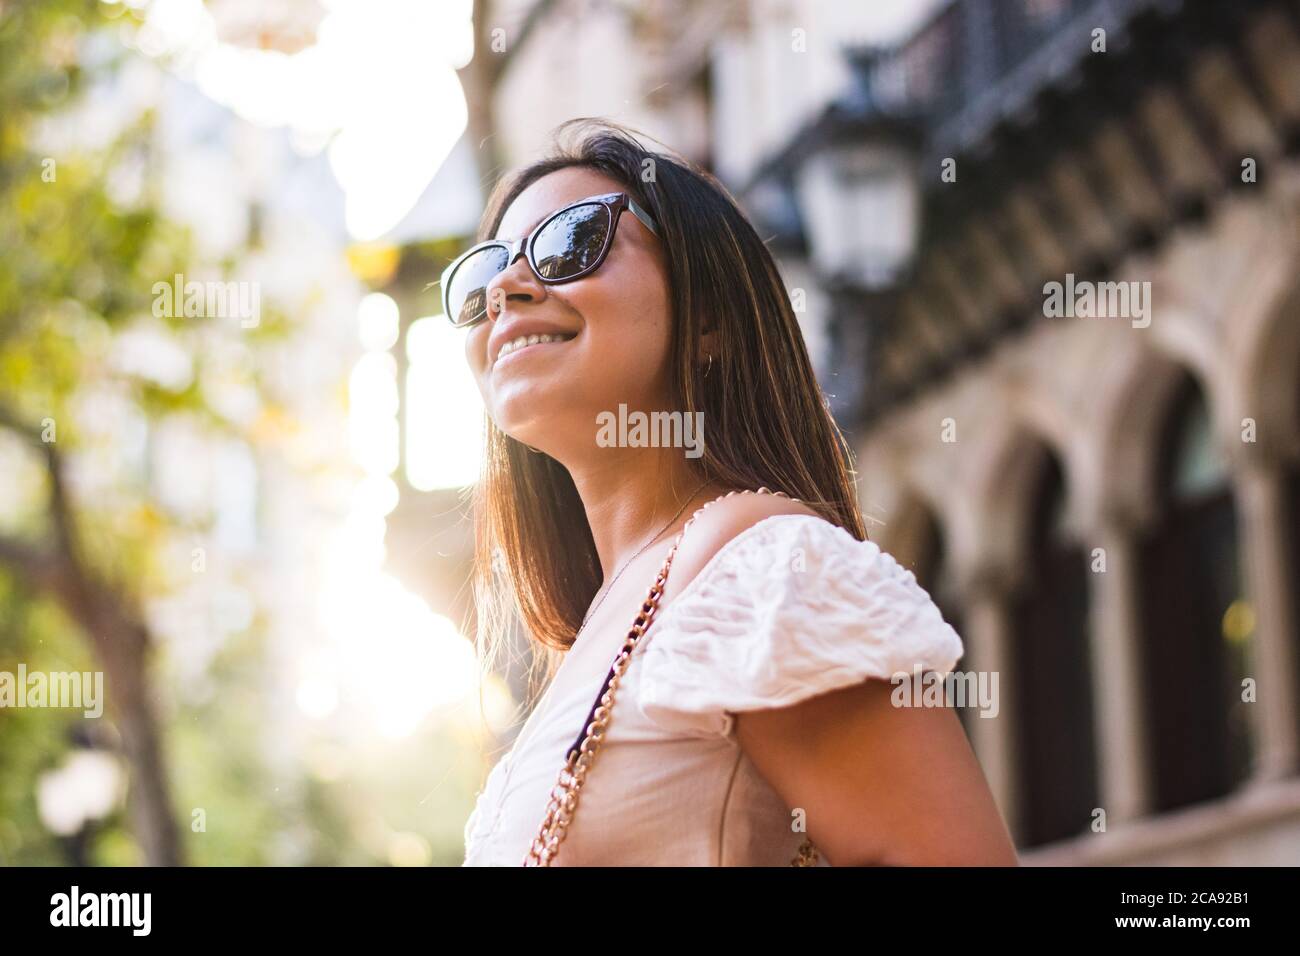 une femme avec des lunettes de soleil sourit lorsqu'elle se promène dans la ville Banque D'Images